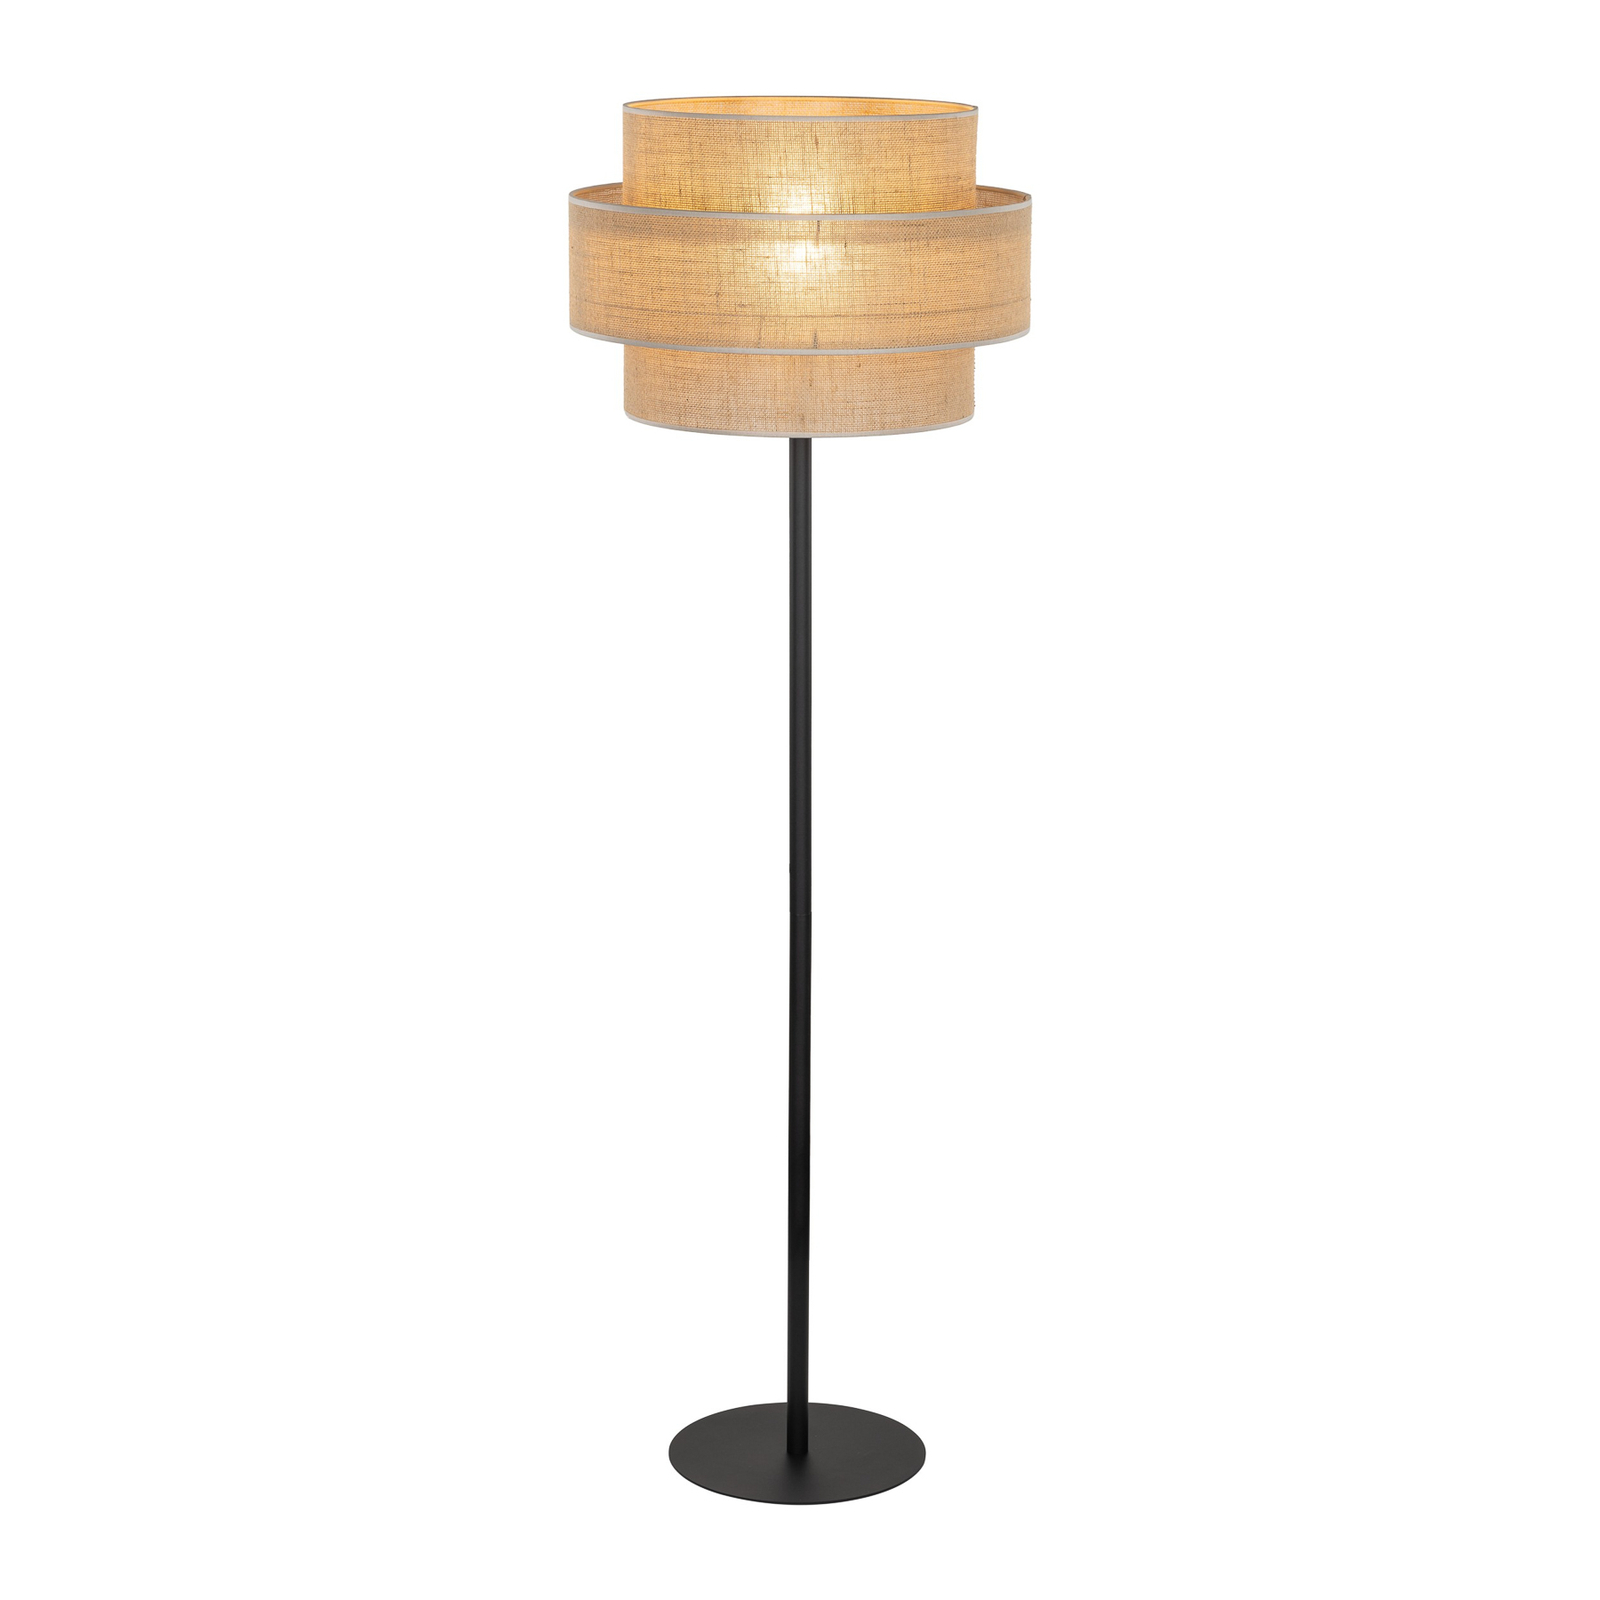 Stojací lampa Calisto, juta, válec, přírodní hnědá, výška 155 cm